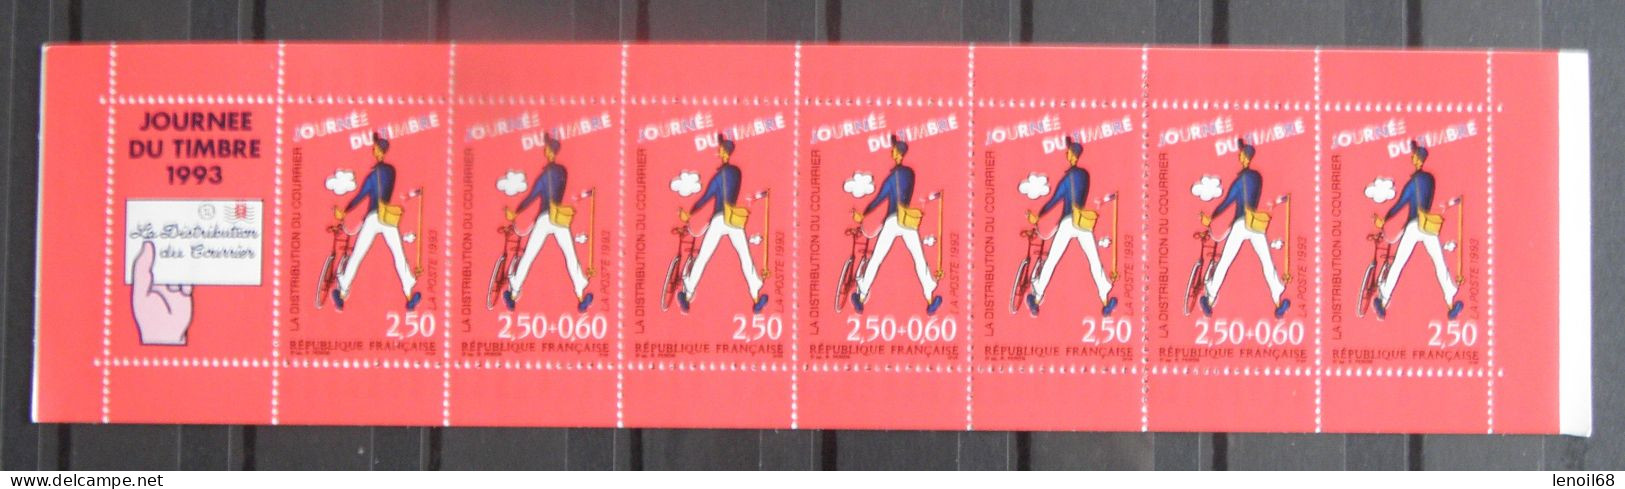 Carnet Journée Du Timbre 1993 N° BC2794 La Distributon Du Courrier (Jacques Tati) Neuf, Non Plié - Tag Der Briefmarke